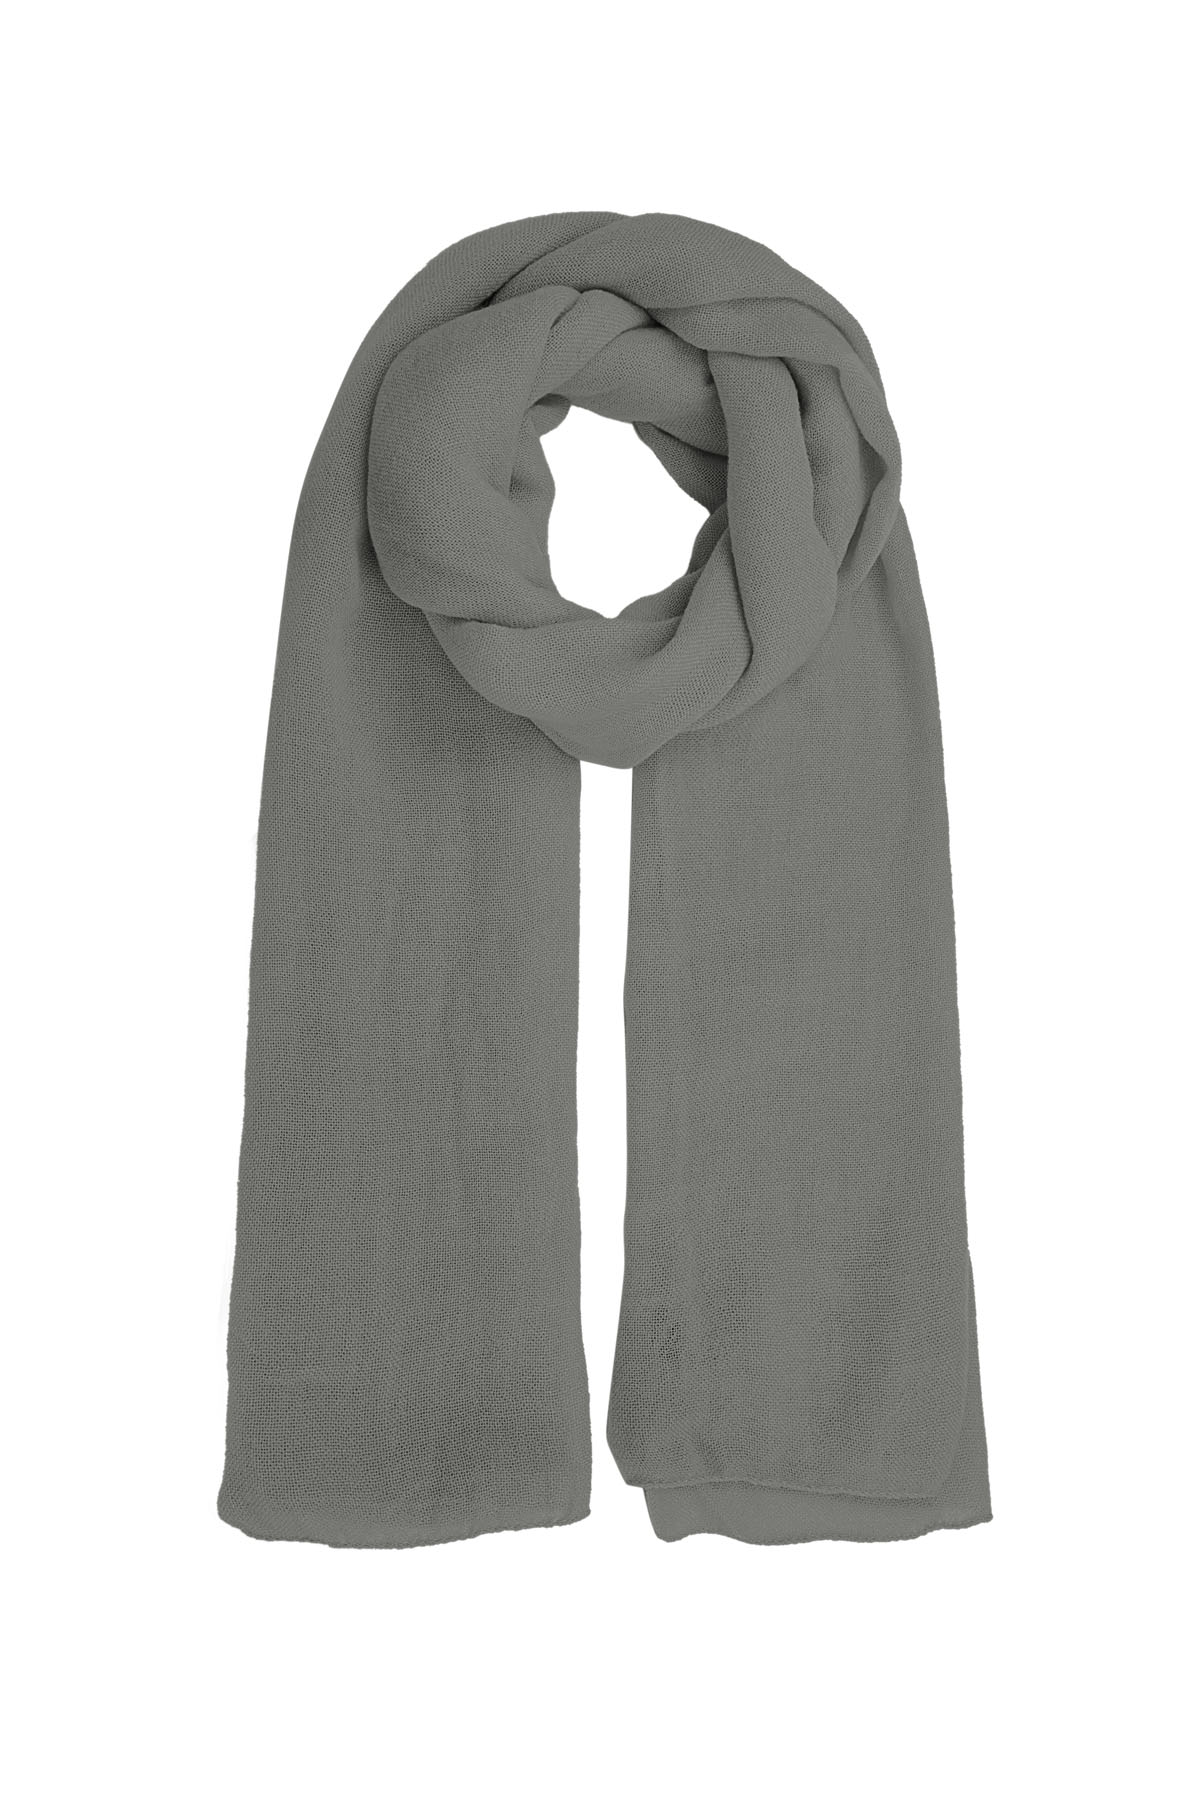 Sjaal effen kleur - grijs h5 